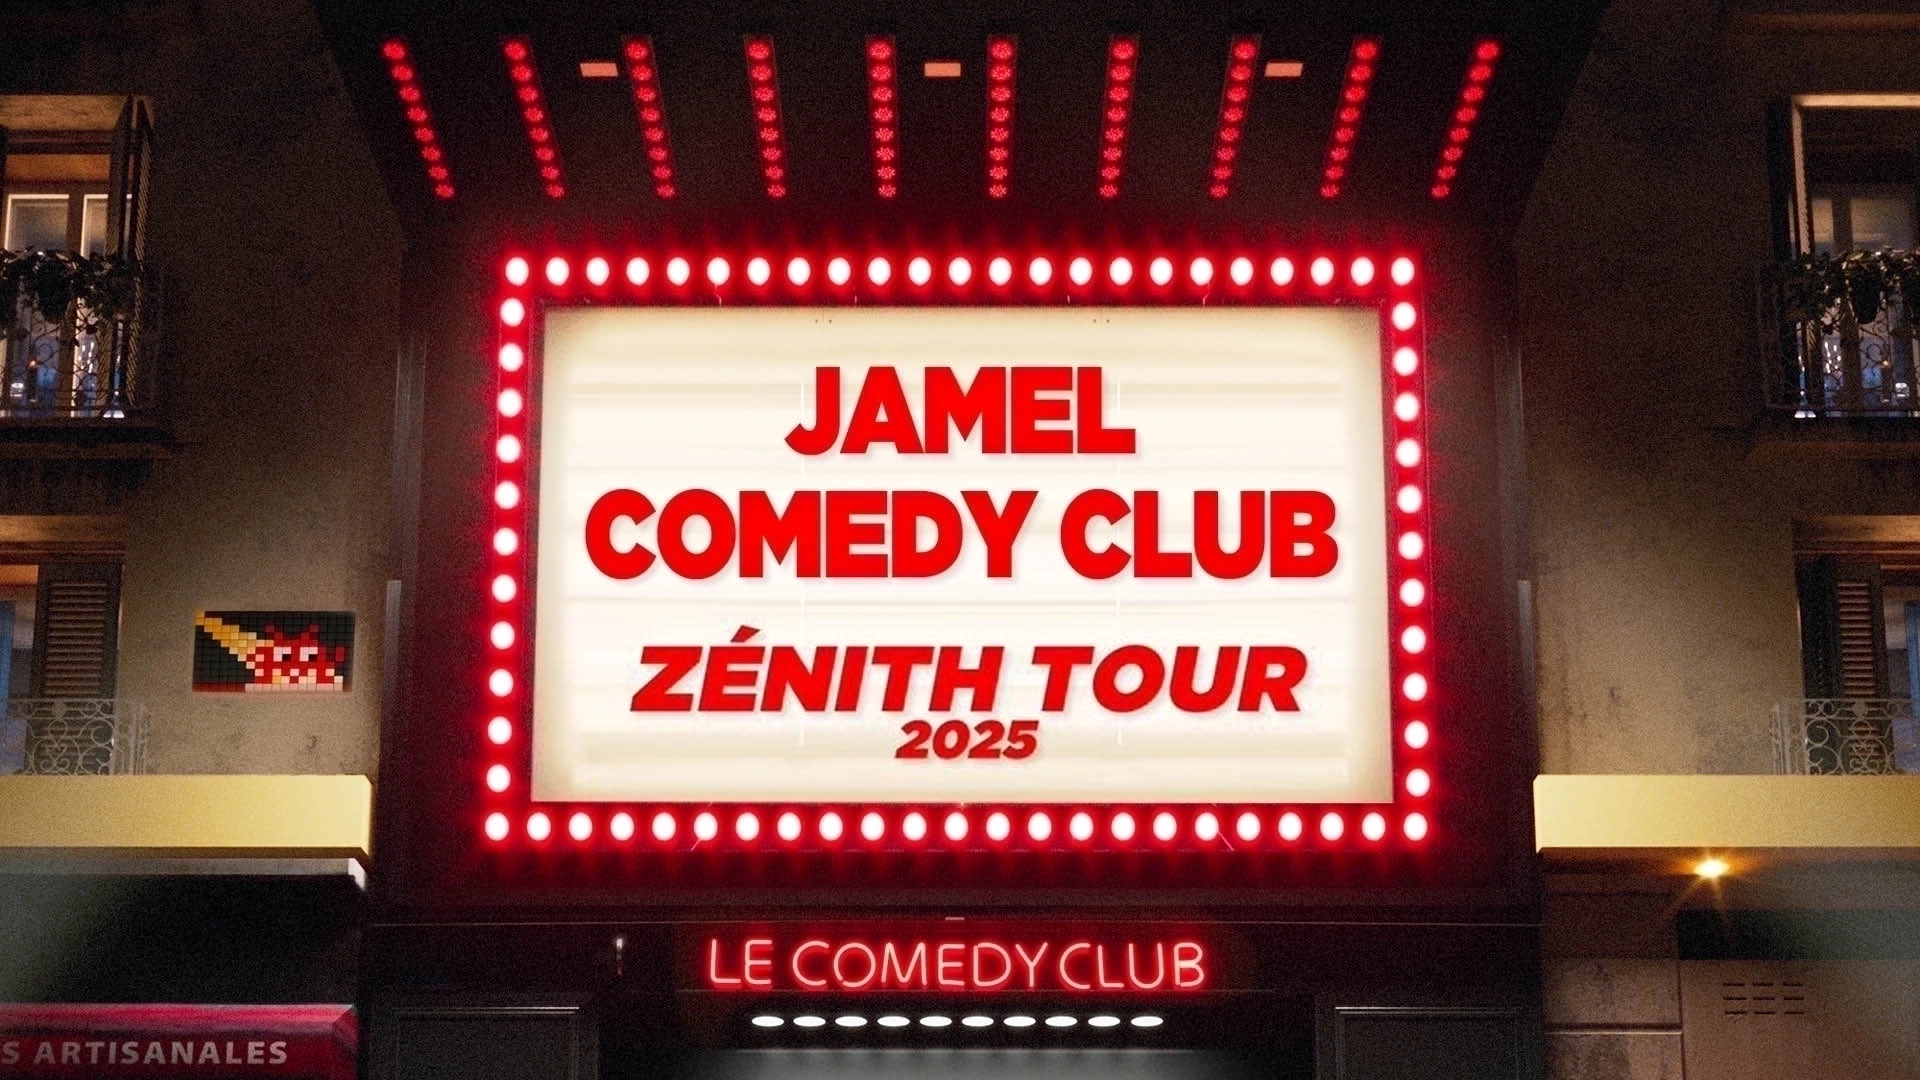 Jamel Comedy Club Zenith Tour 2025 at Palais Nikaia Tickets